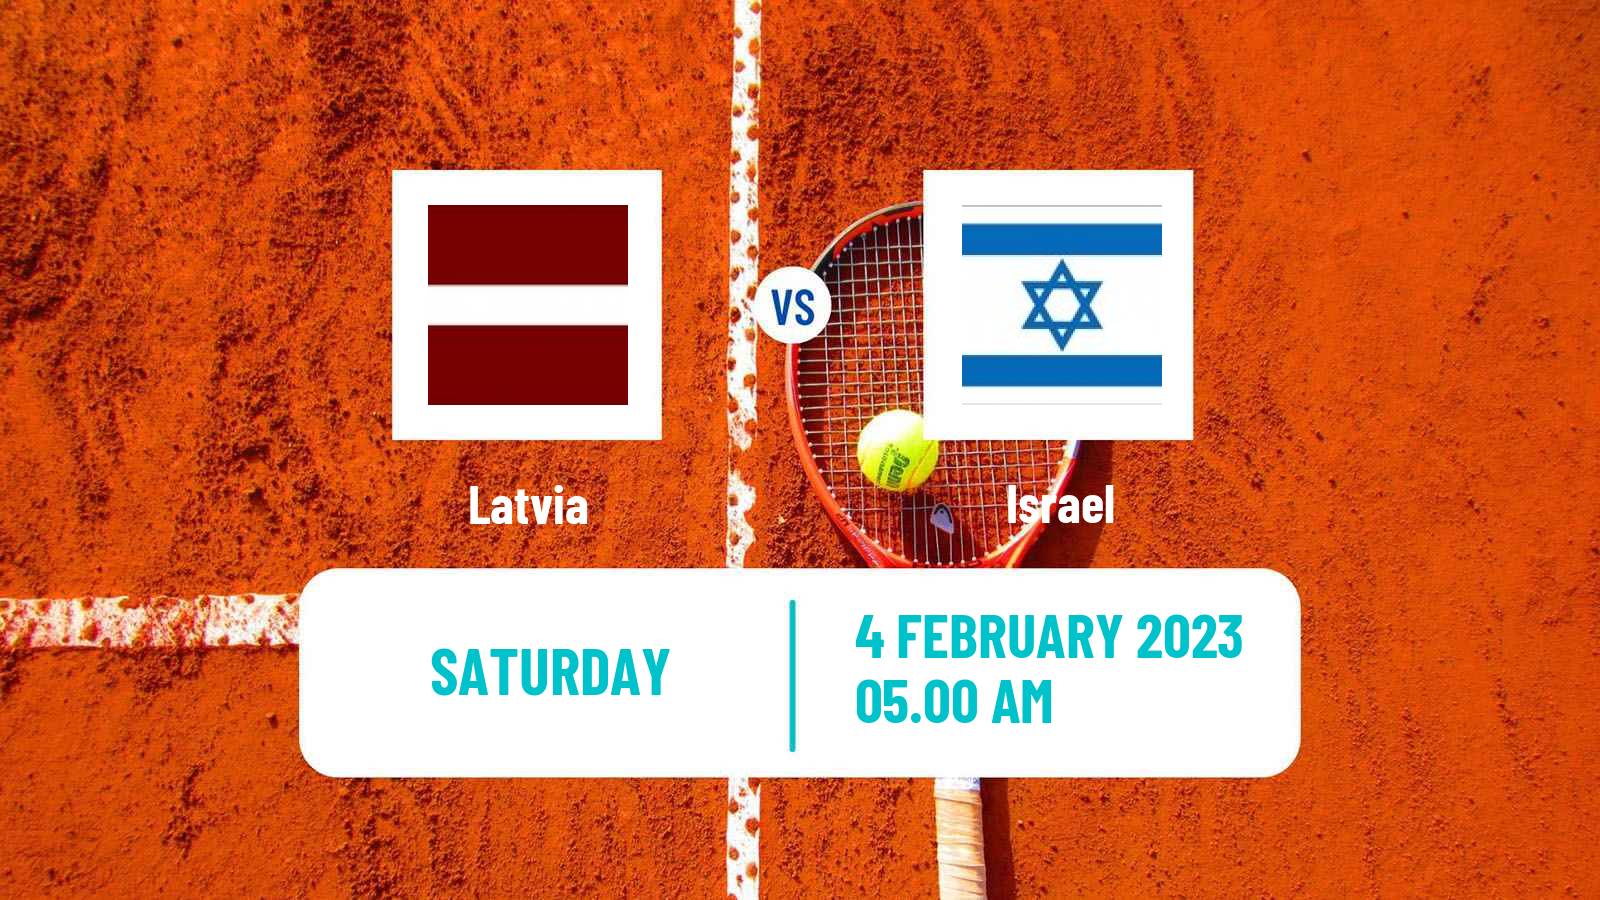 Tennis Davis Cup World Group I Teams Latvia - Israel